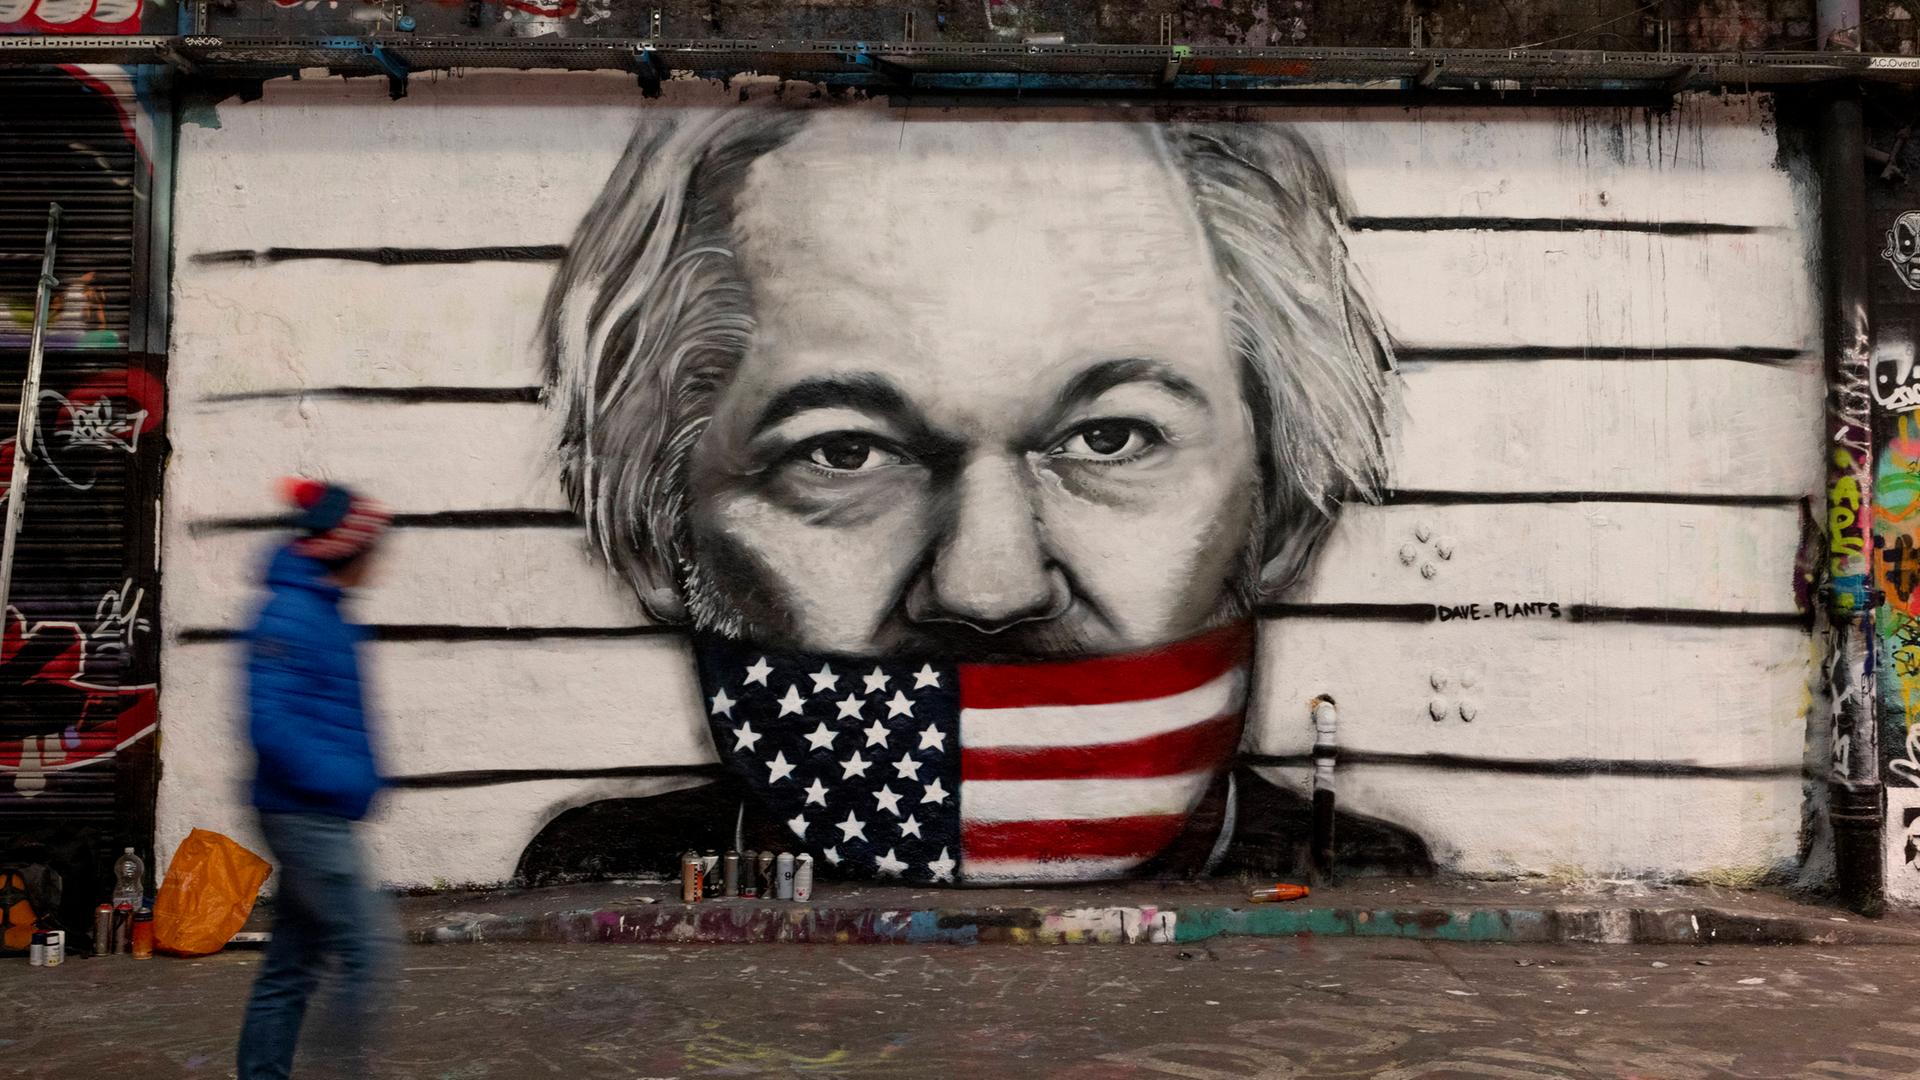 Julian-Assange-Graffiti in London, Leake Street